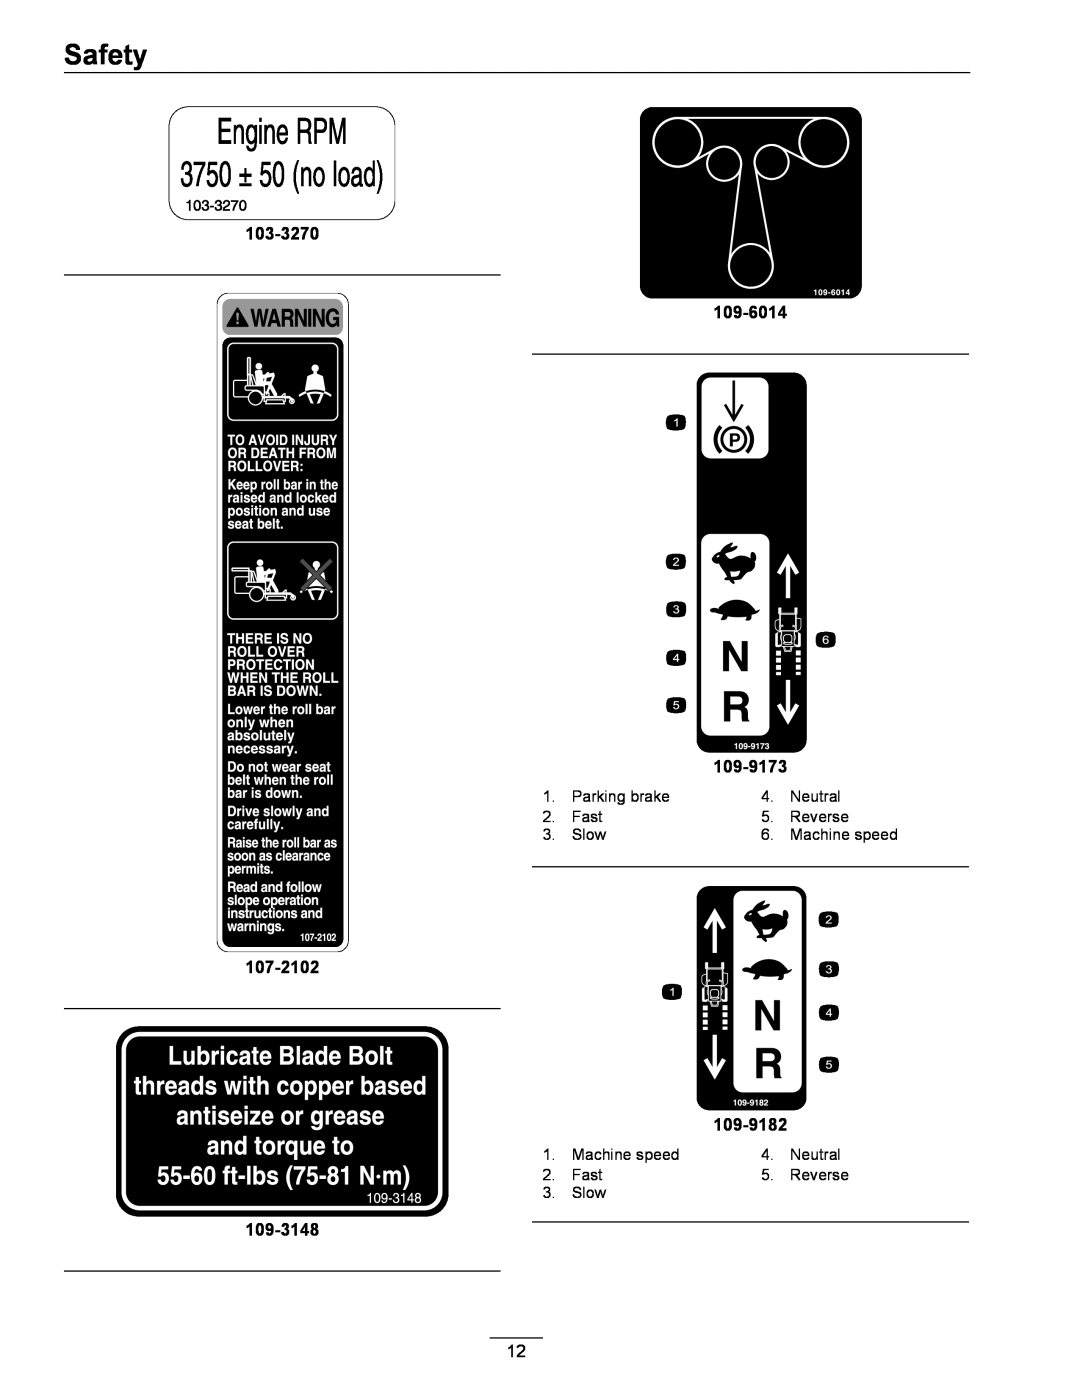 Exmark 850, 00 & Higher manual Safety, 103-3270, 109-6014, 109-9182, Parking brake 